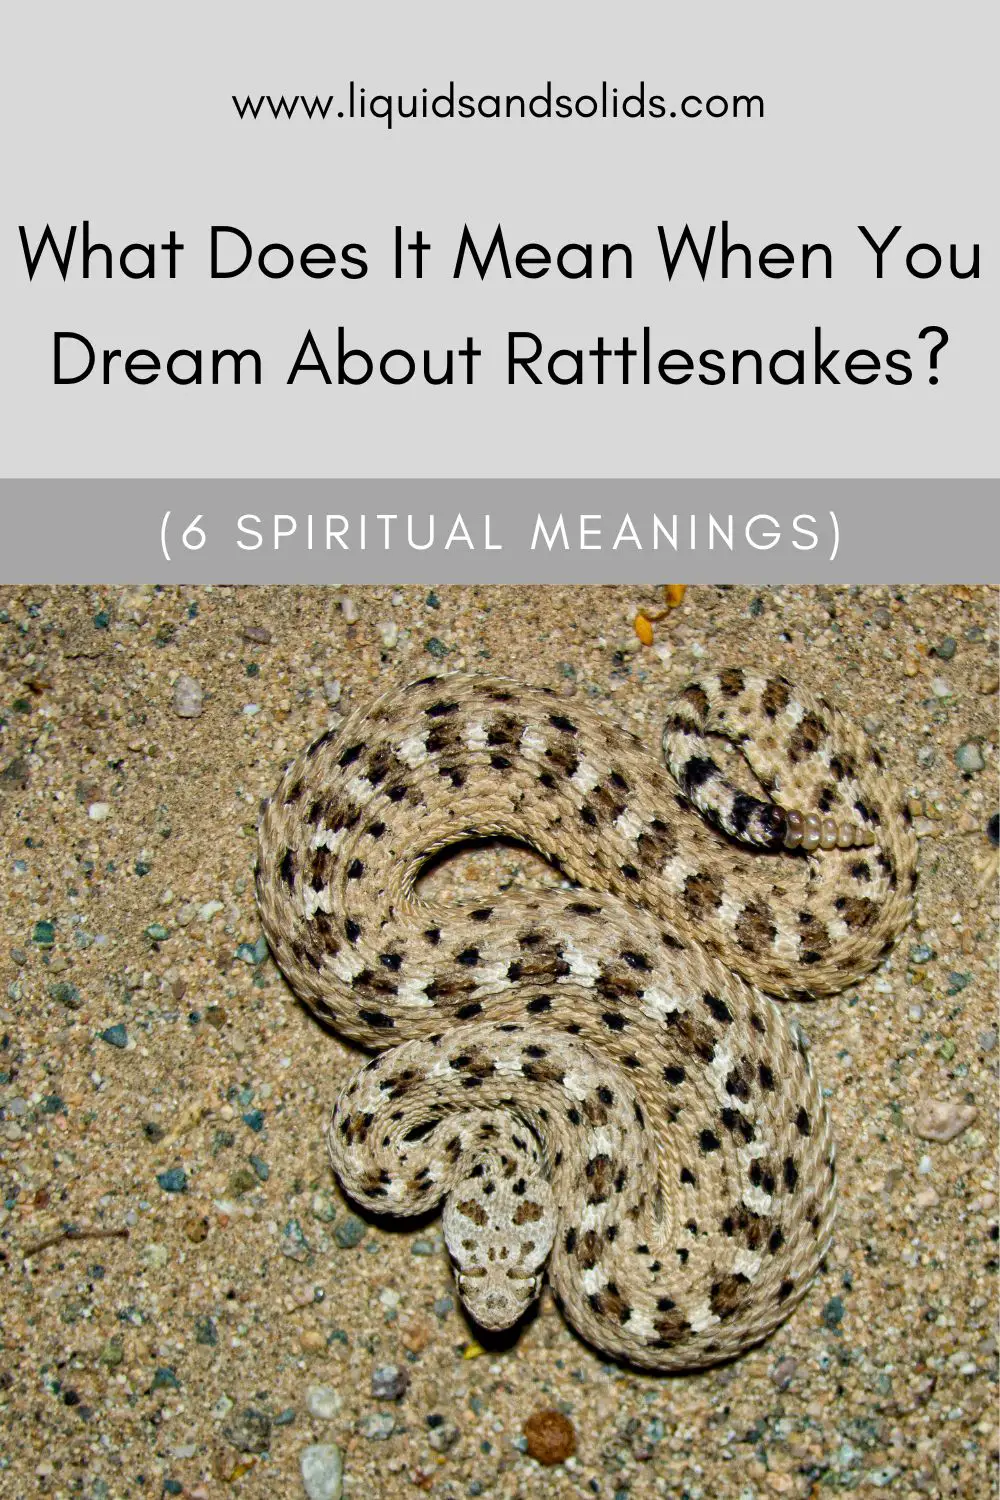 Rattlesnake Dreams